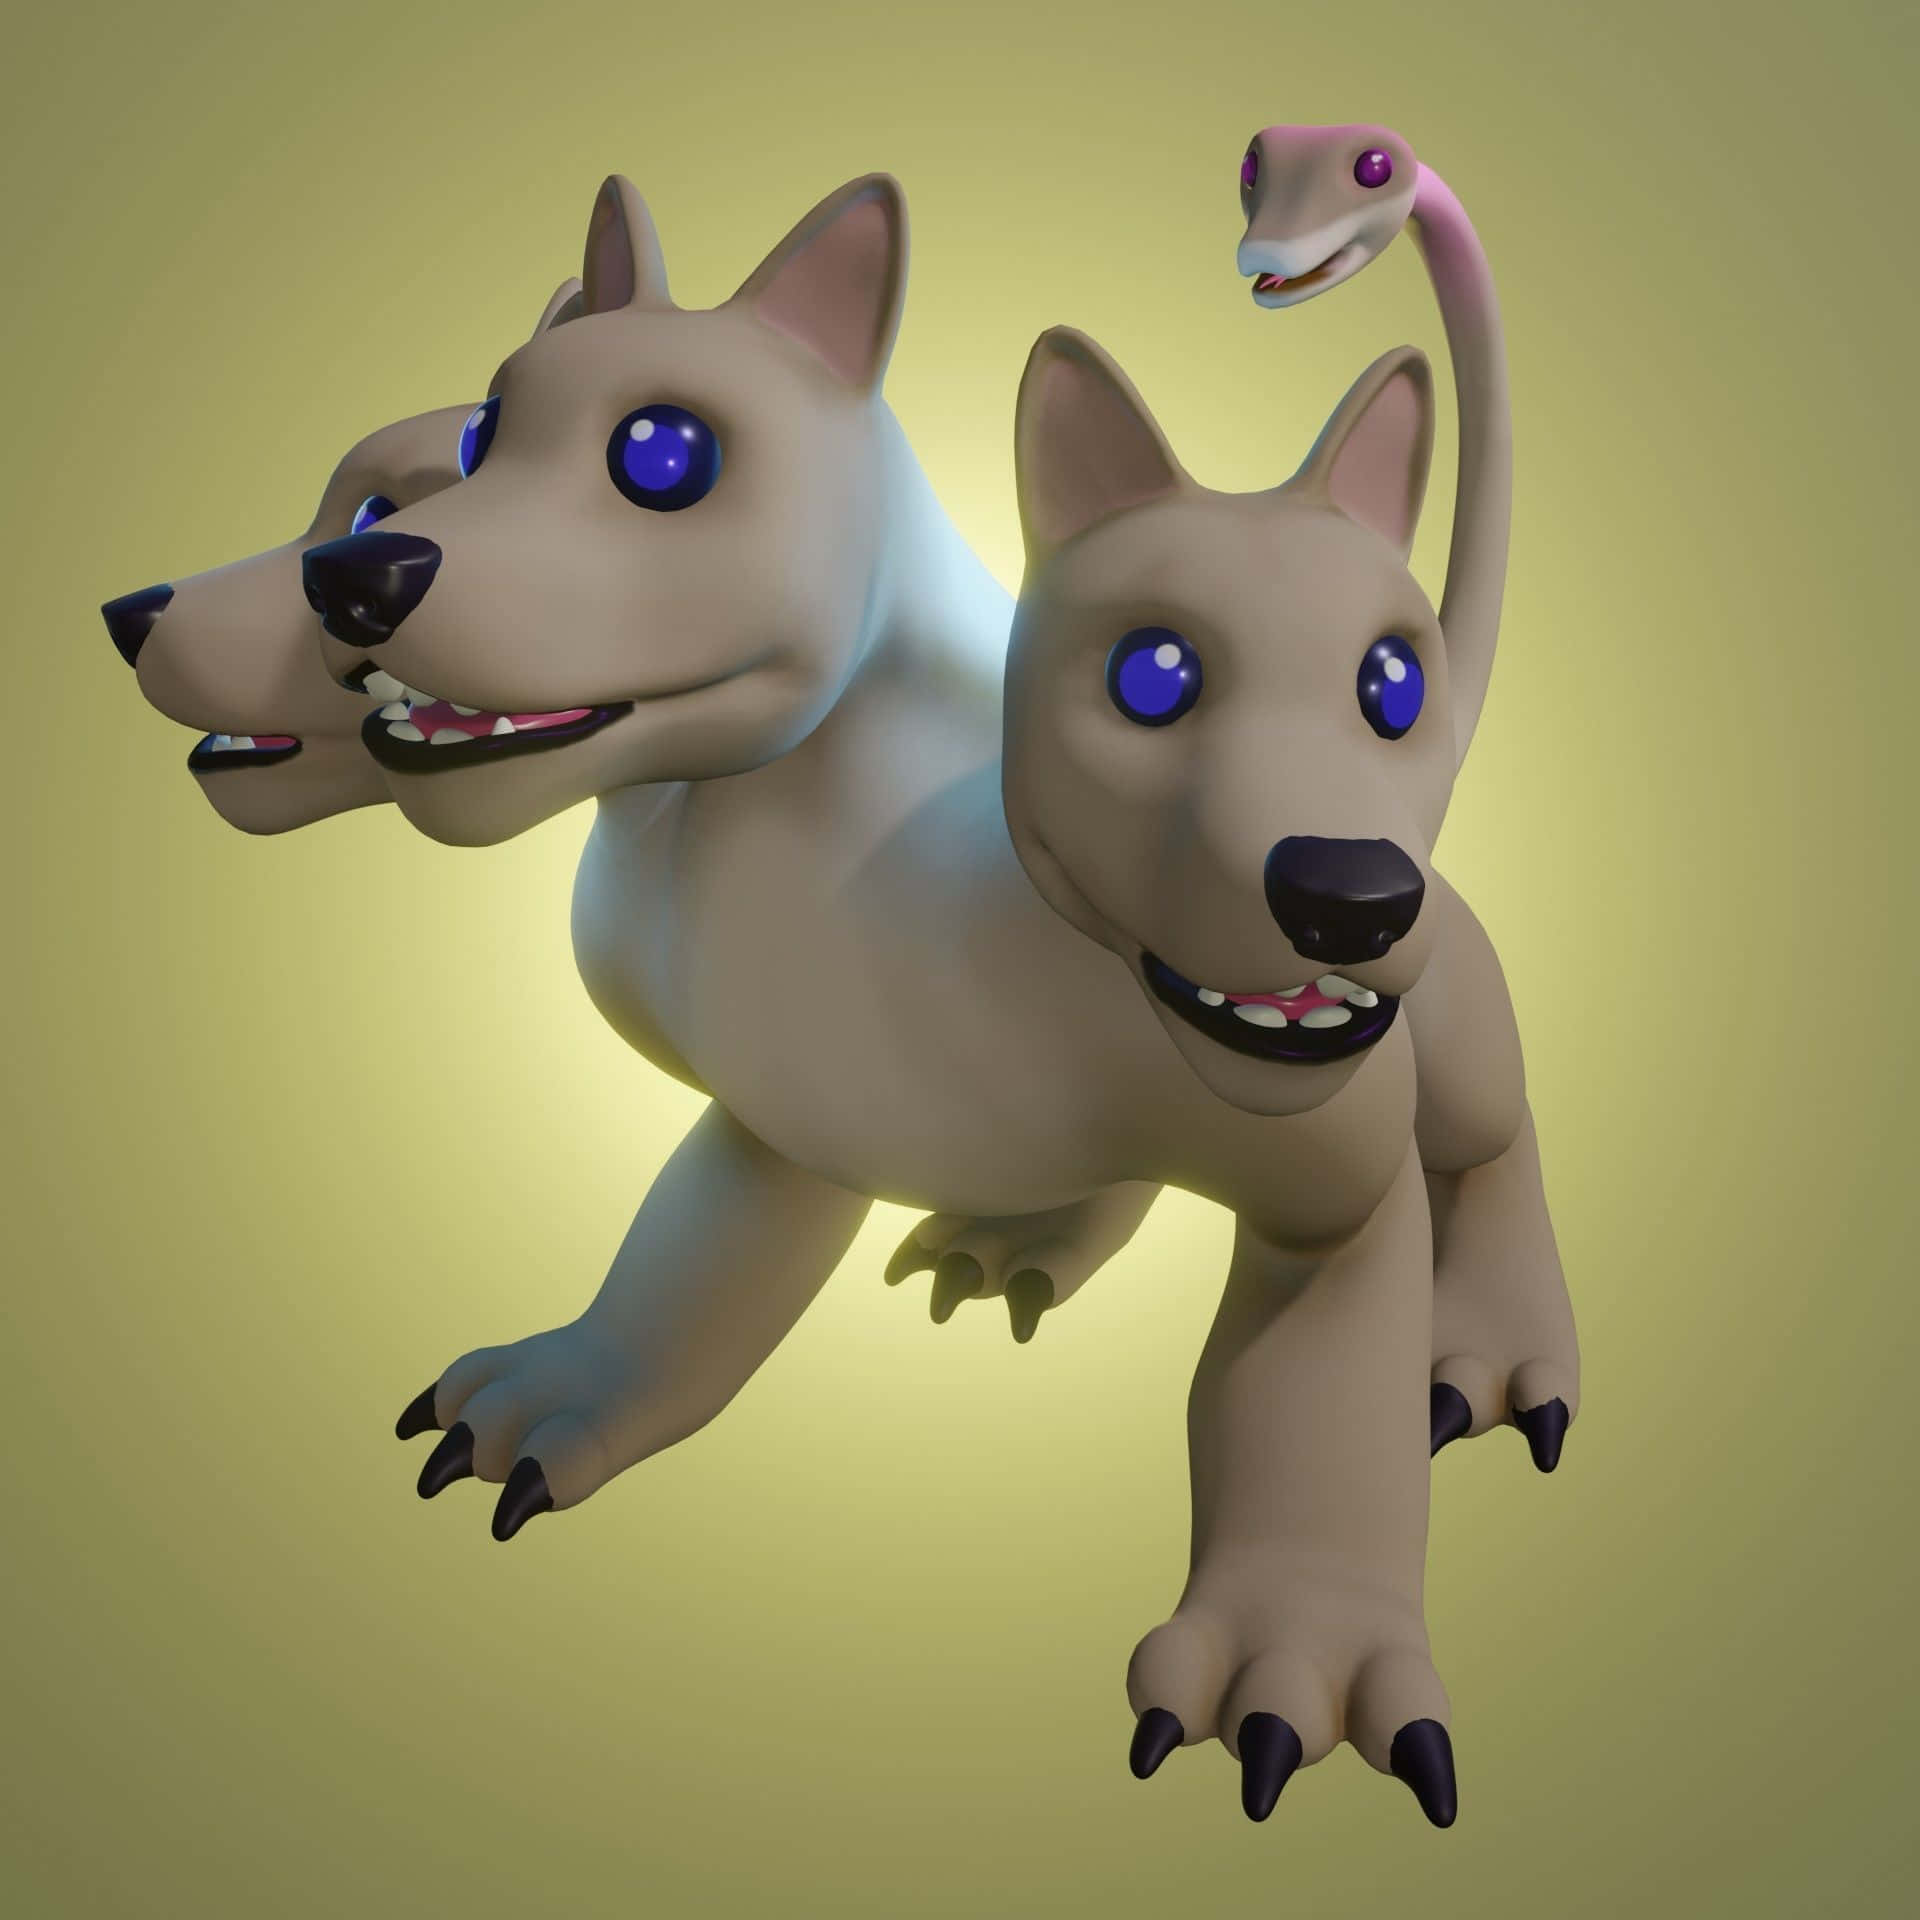 Ein3d-modell Eines Hundes Mit Blauen Augen